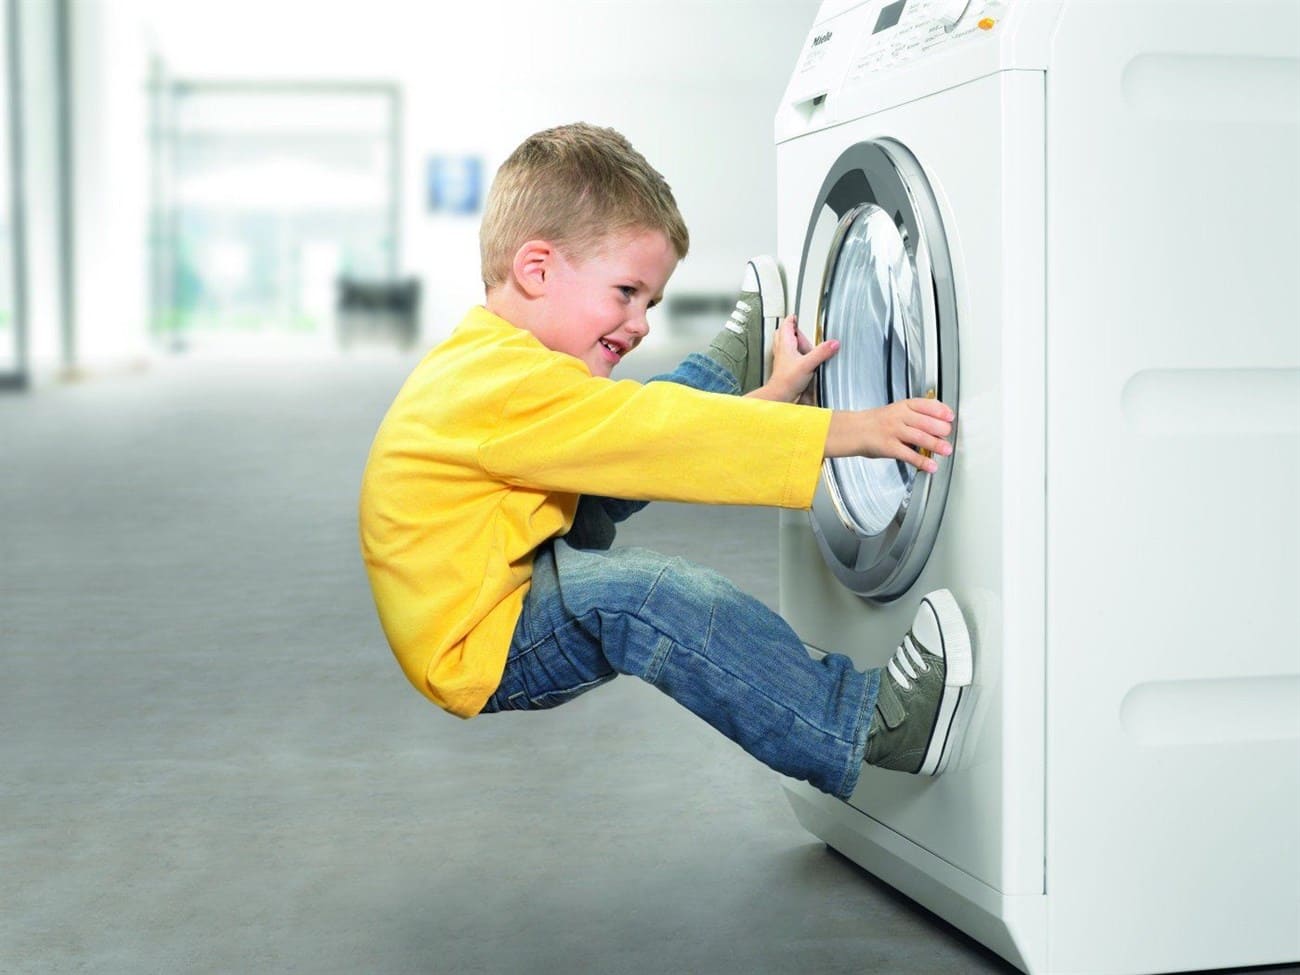 máy giặt samsung bị khóa không mở được cửa